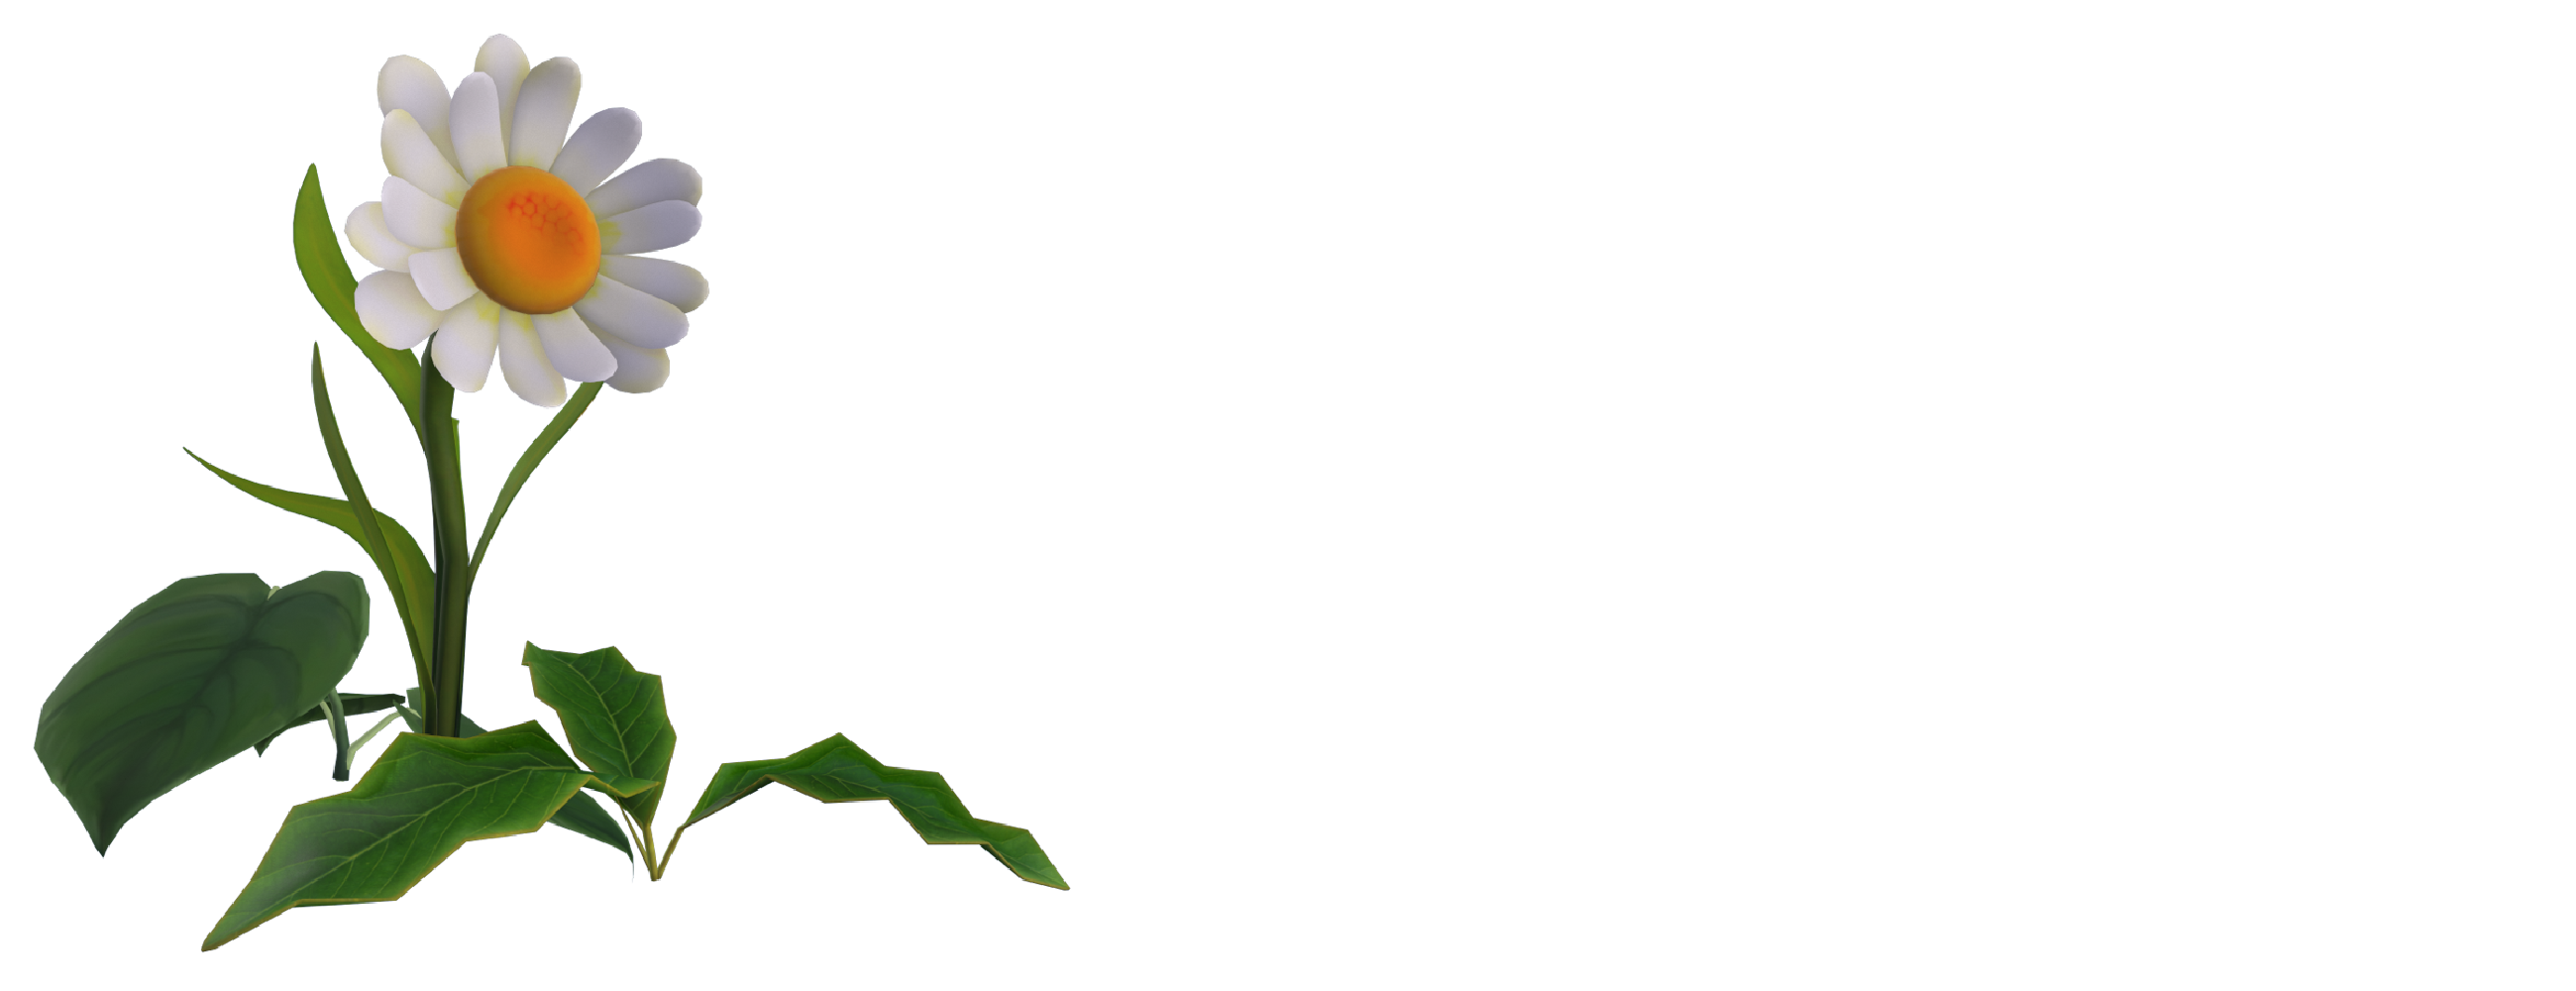 Ecriture "Services" avec une paquerette par dessus